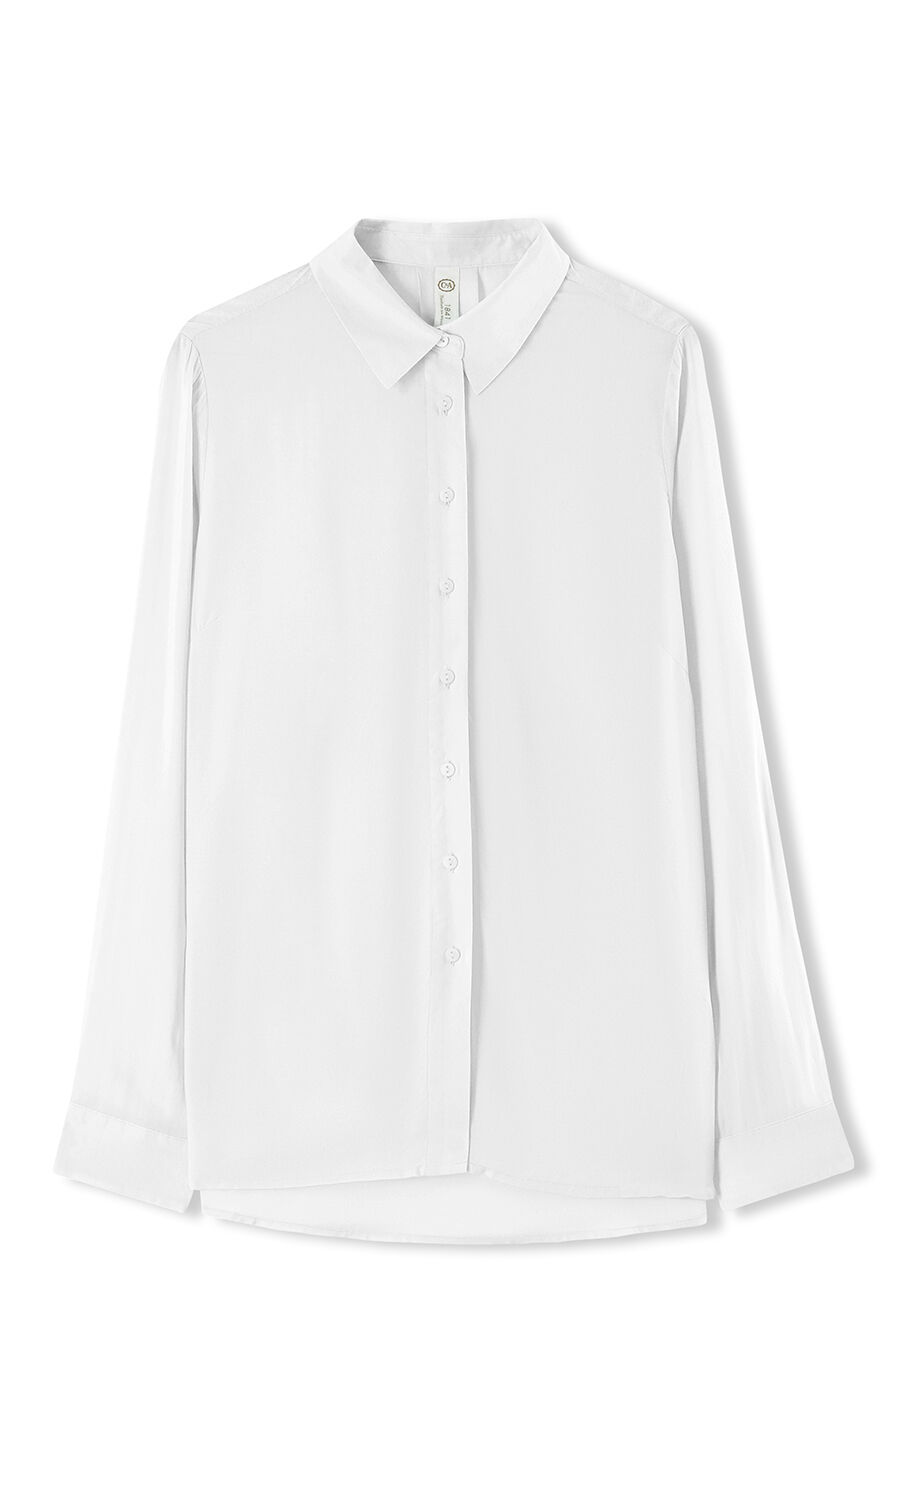 C&A Yessica Camisa de manga larga azul-blanco puro estilo cl\u00e1sico Moda Camisas de vestir Camisas de manga larga 